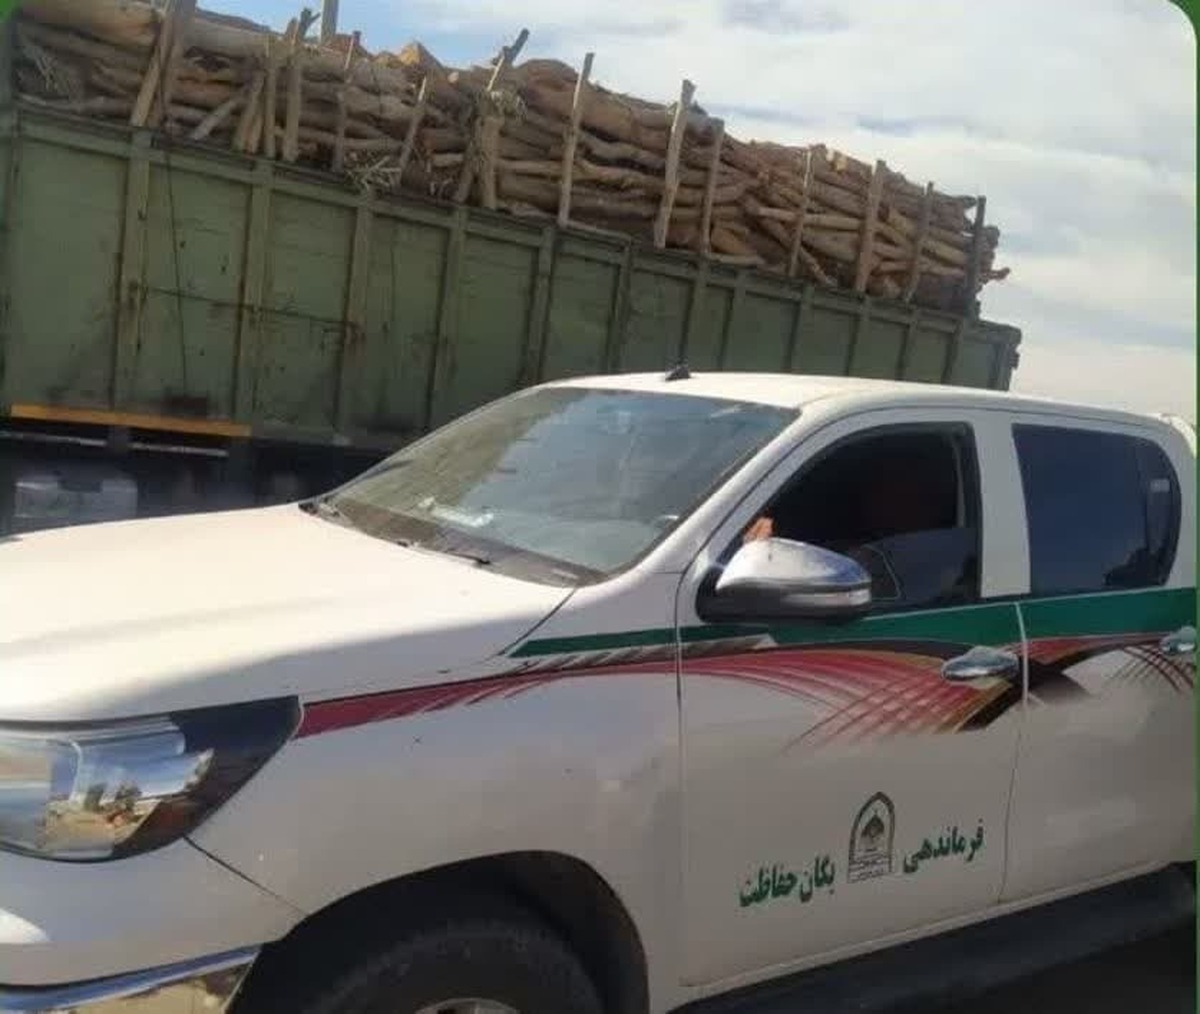 کشف و ضبط ۱۵ تن چوب بدون مجوز حمل در شهرستان جیرفت